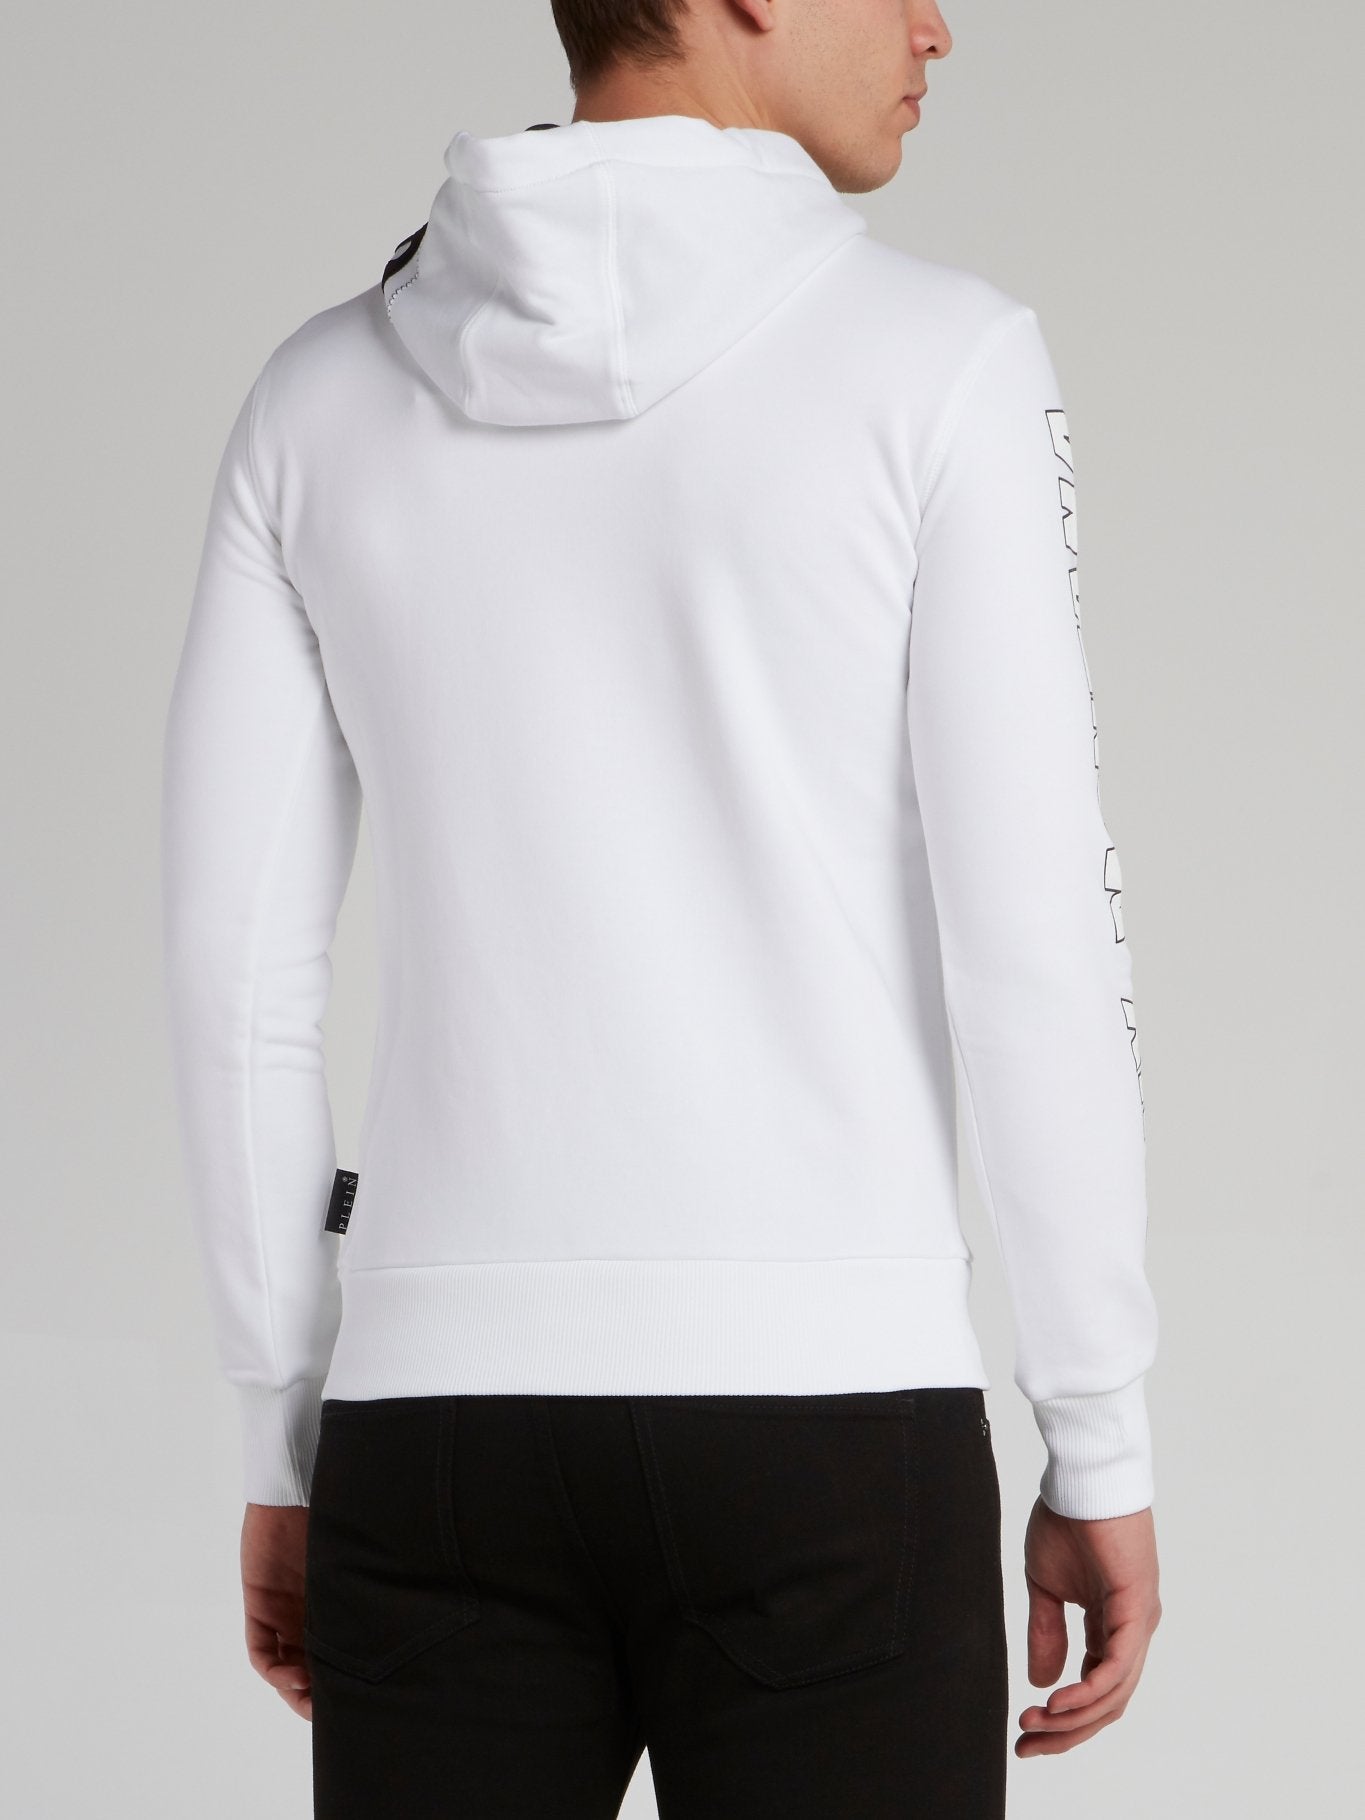 Scarface White Studded Sweatshirt